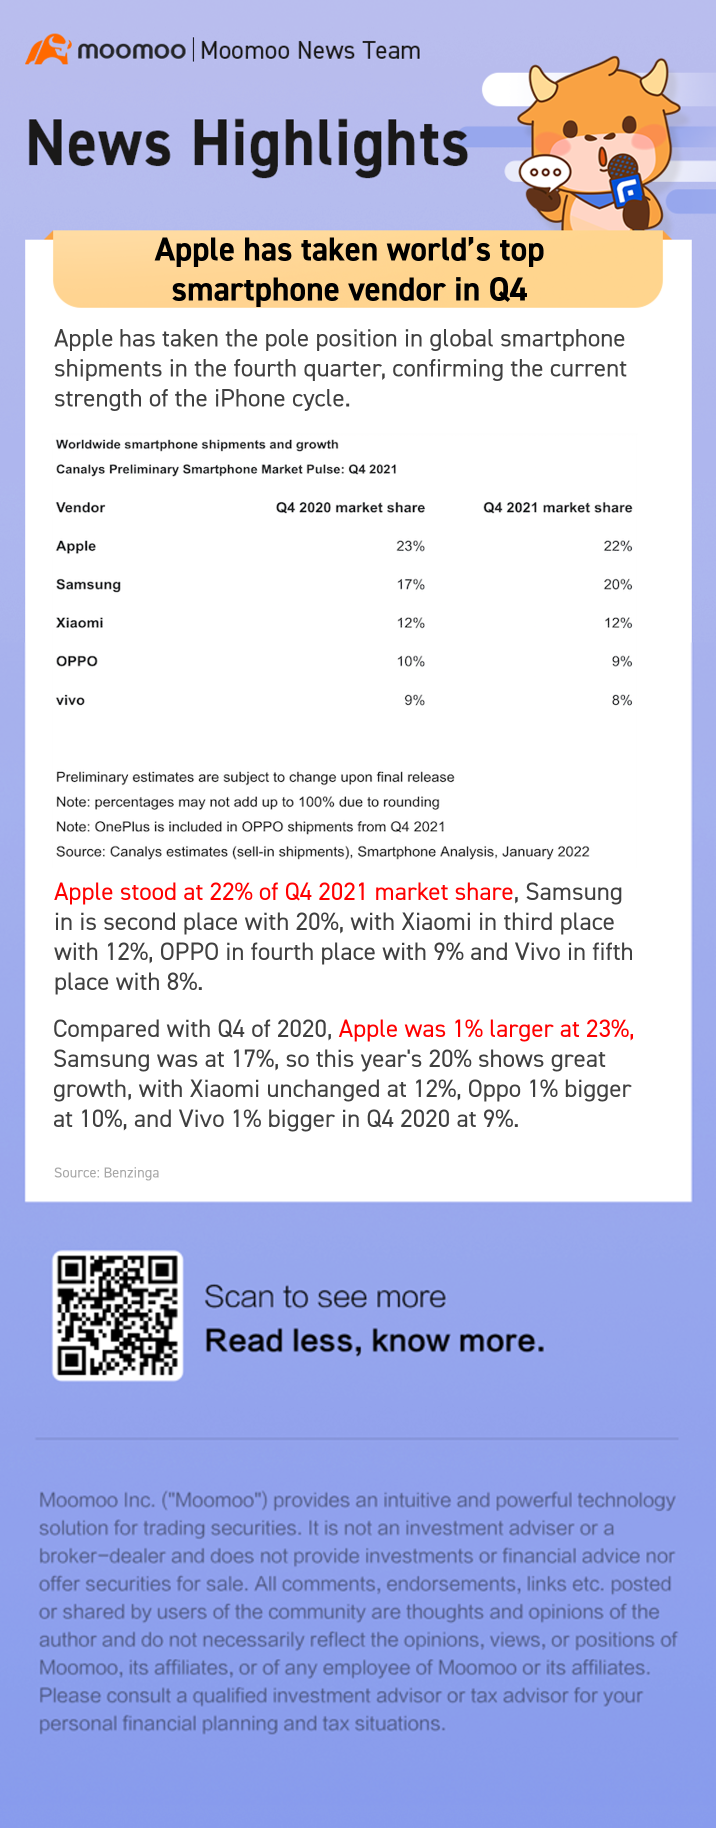 蘋果在第四季度獲全球頂級智能手機供應商